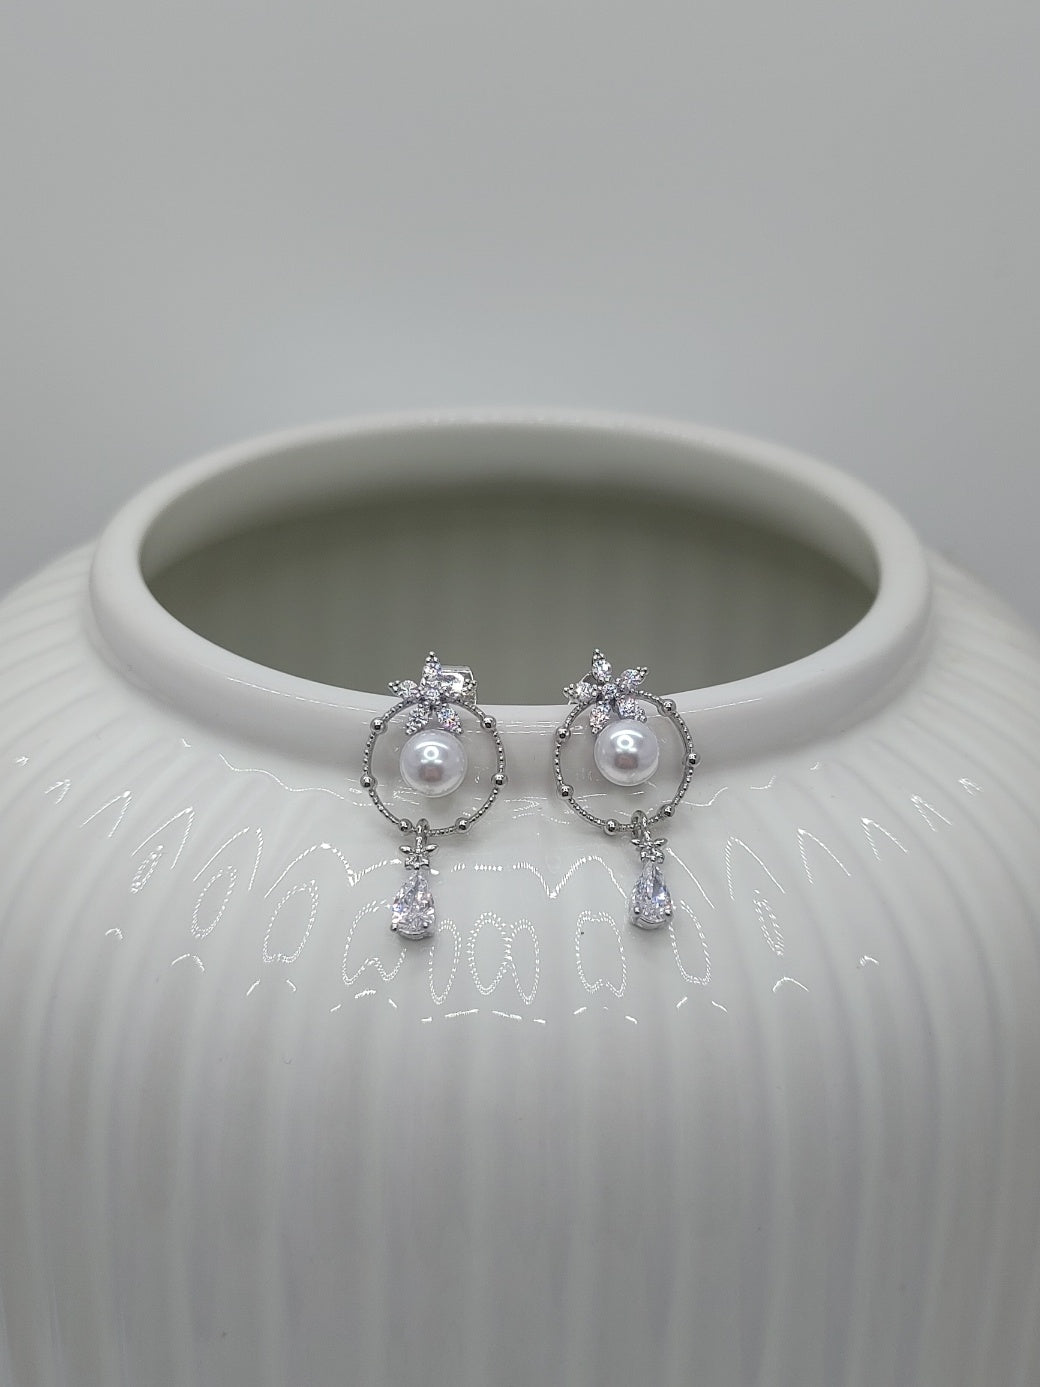 'Pearl of Spring' earrings